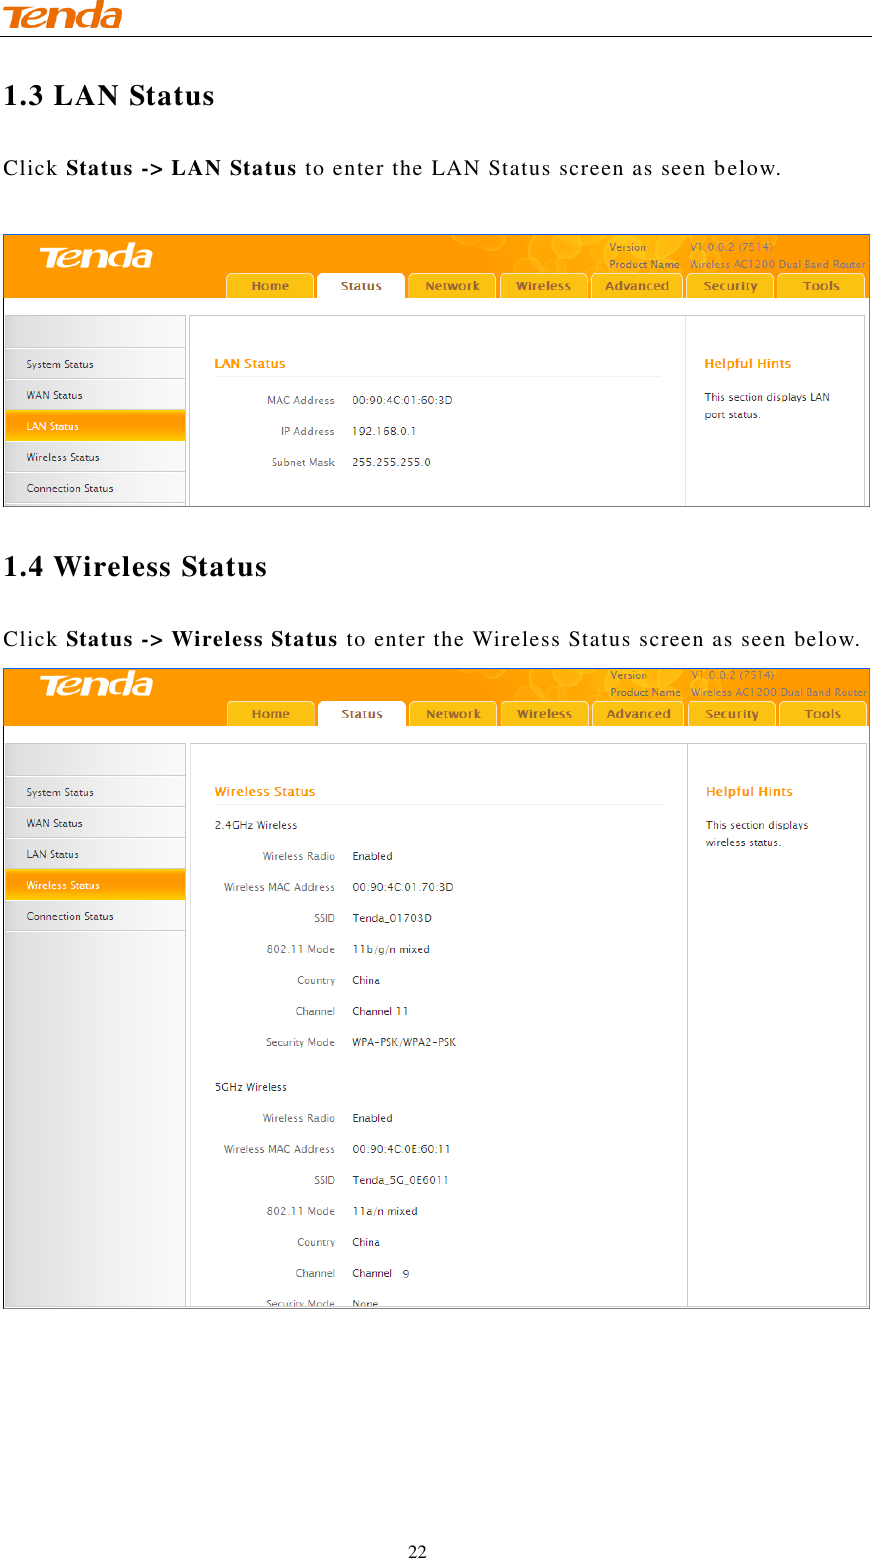                                    22 1.3 LAN Status Click Status -&gt; LAN Status to enter the LAN Status screen as seen below.     1.4 Wireless Status Click Status -&gt; Wireless Status to enter the Wireless Status screen as seen below.  